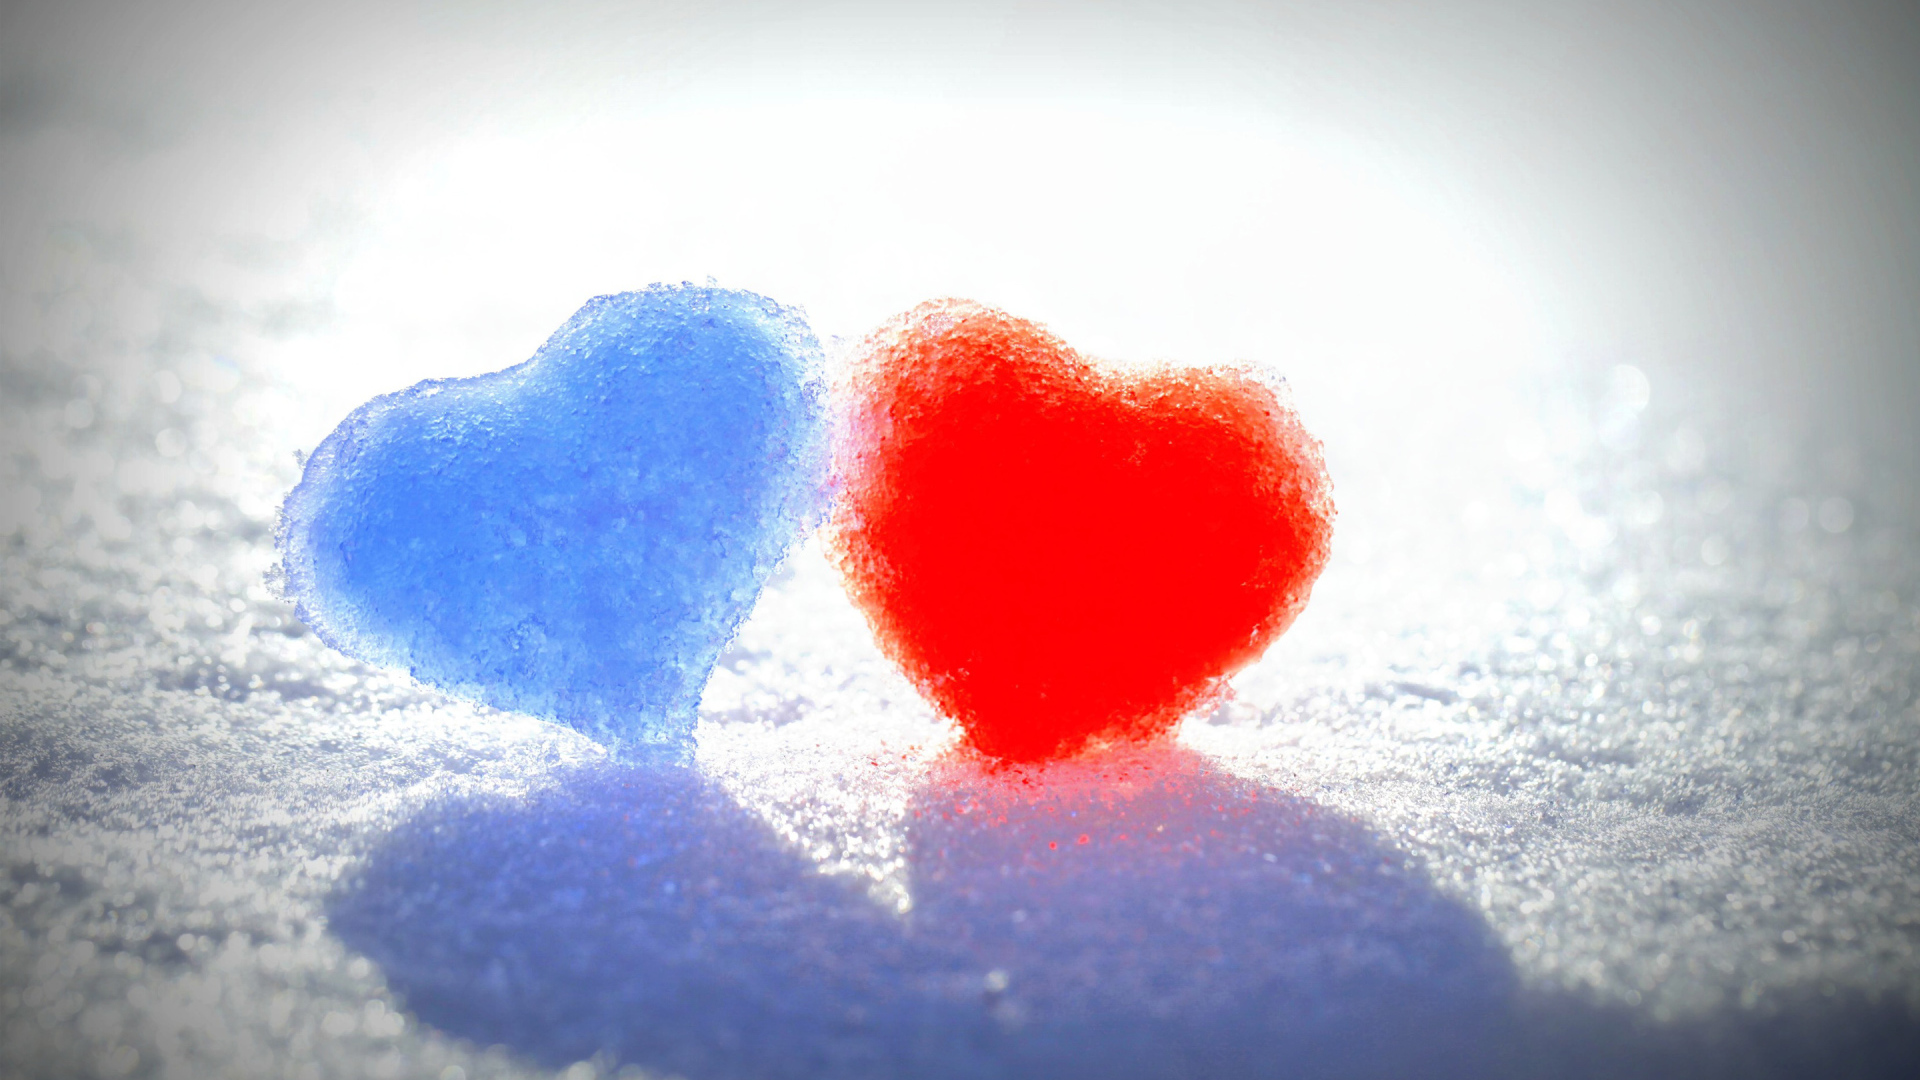 Голубое и красное сердце на белом снегу 